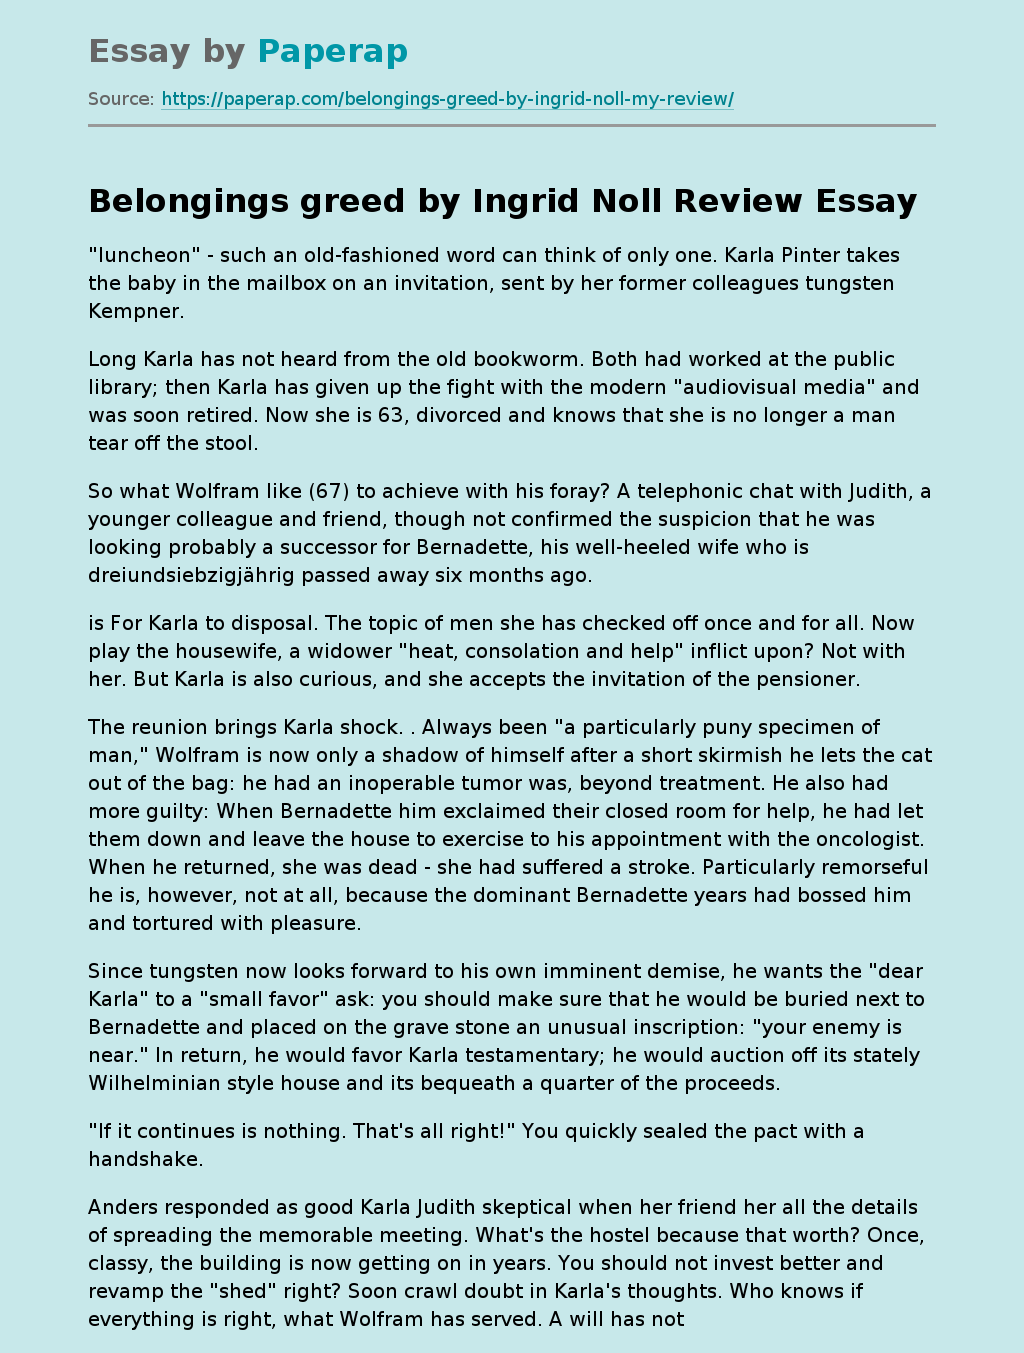 "Belongings Greed" by Ingrid Noll